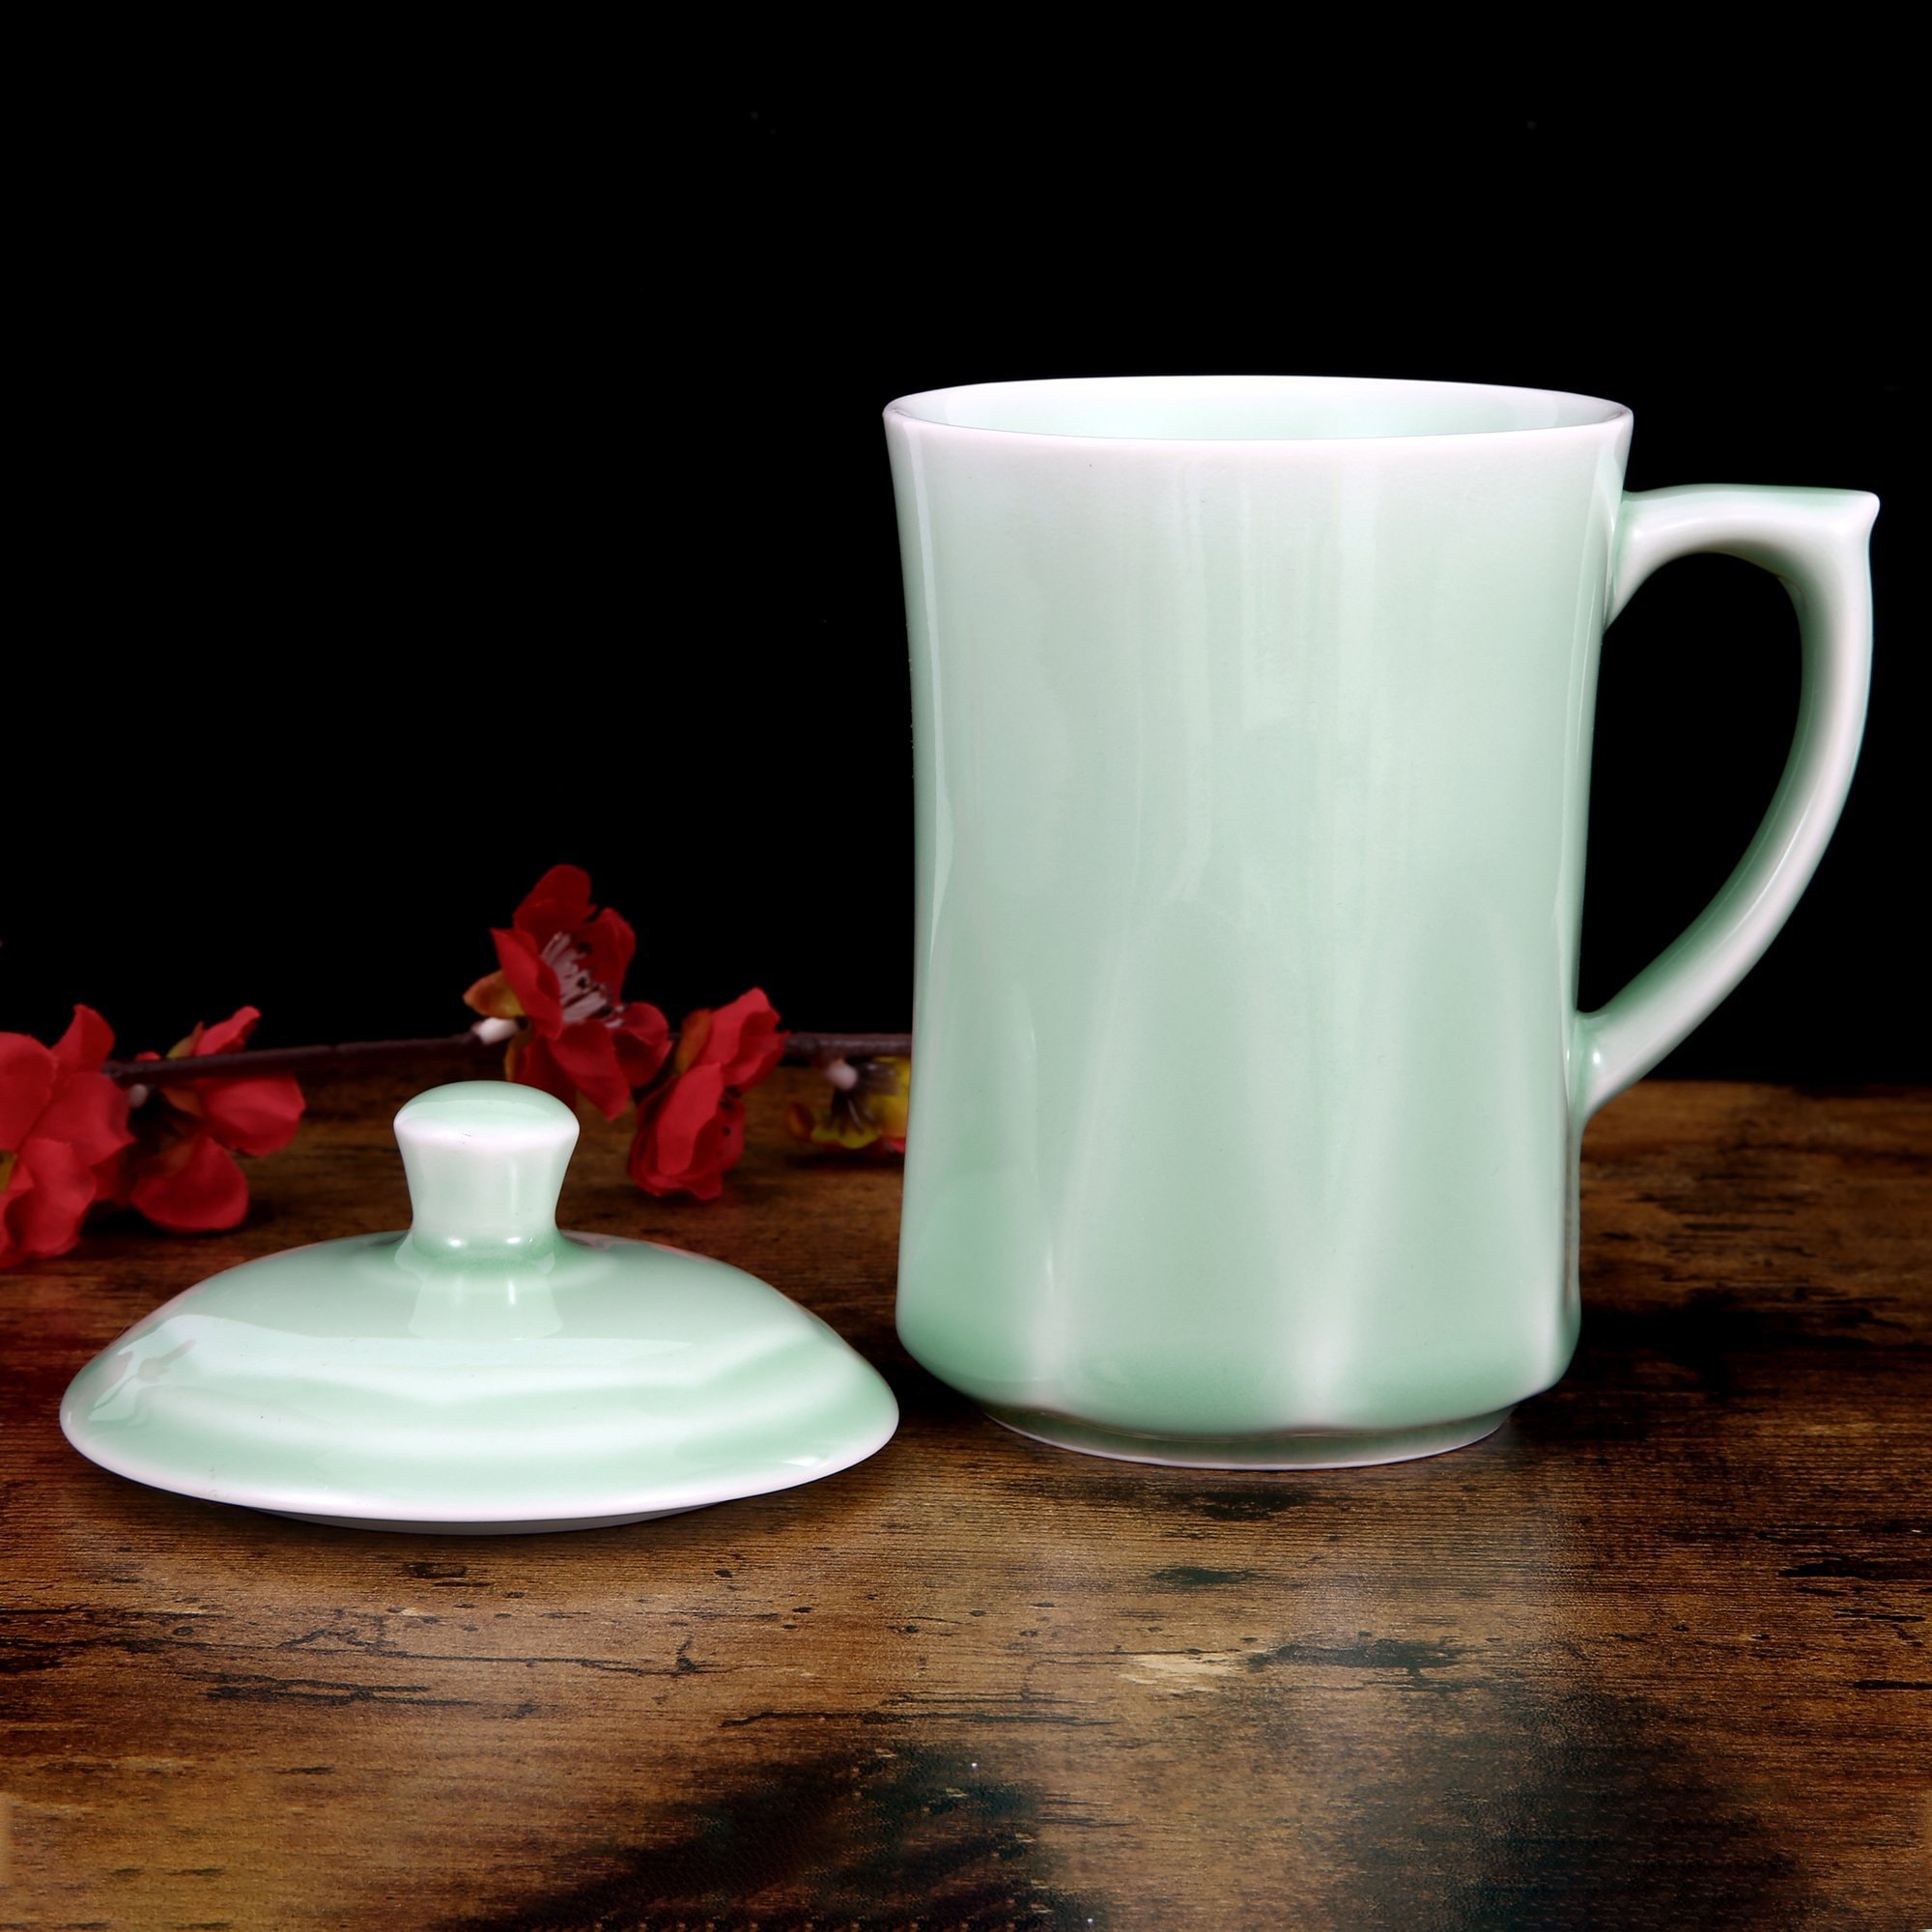 青花瓷茶杯 咖啡杯 牛奶杯 GREEN VALLEY青瓷帶蓋菱杯禮盒 中國龍泉青瓷 世界非物質文化遺產 13盎司水杯 梅子青